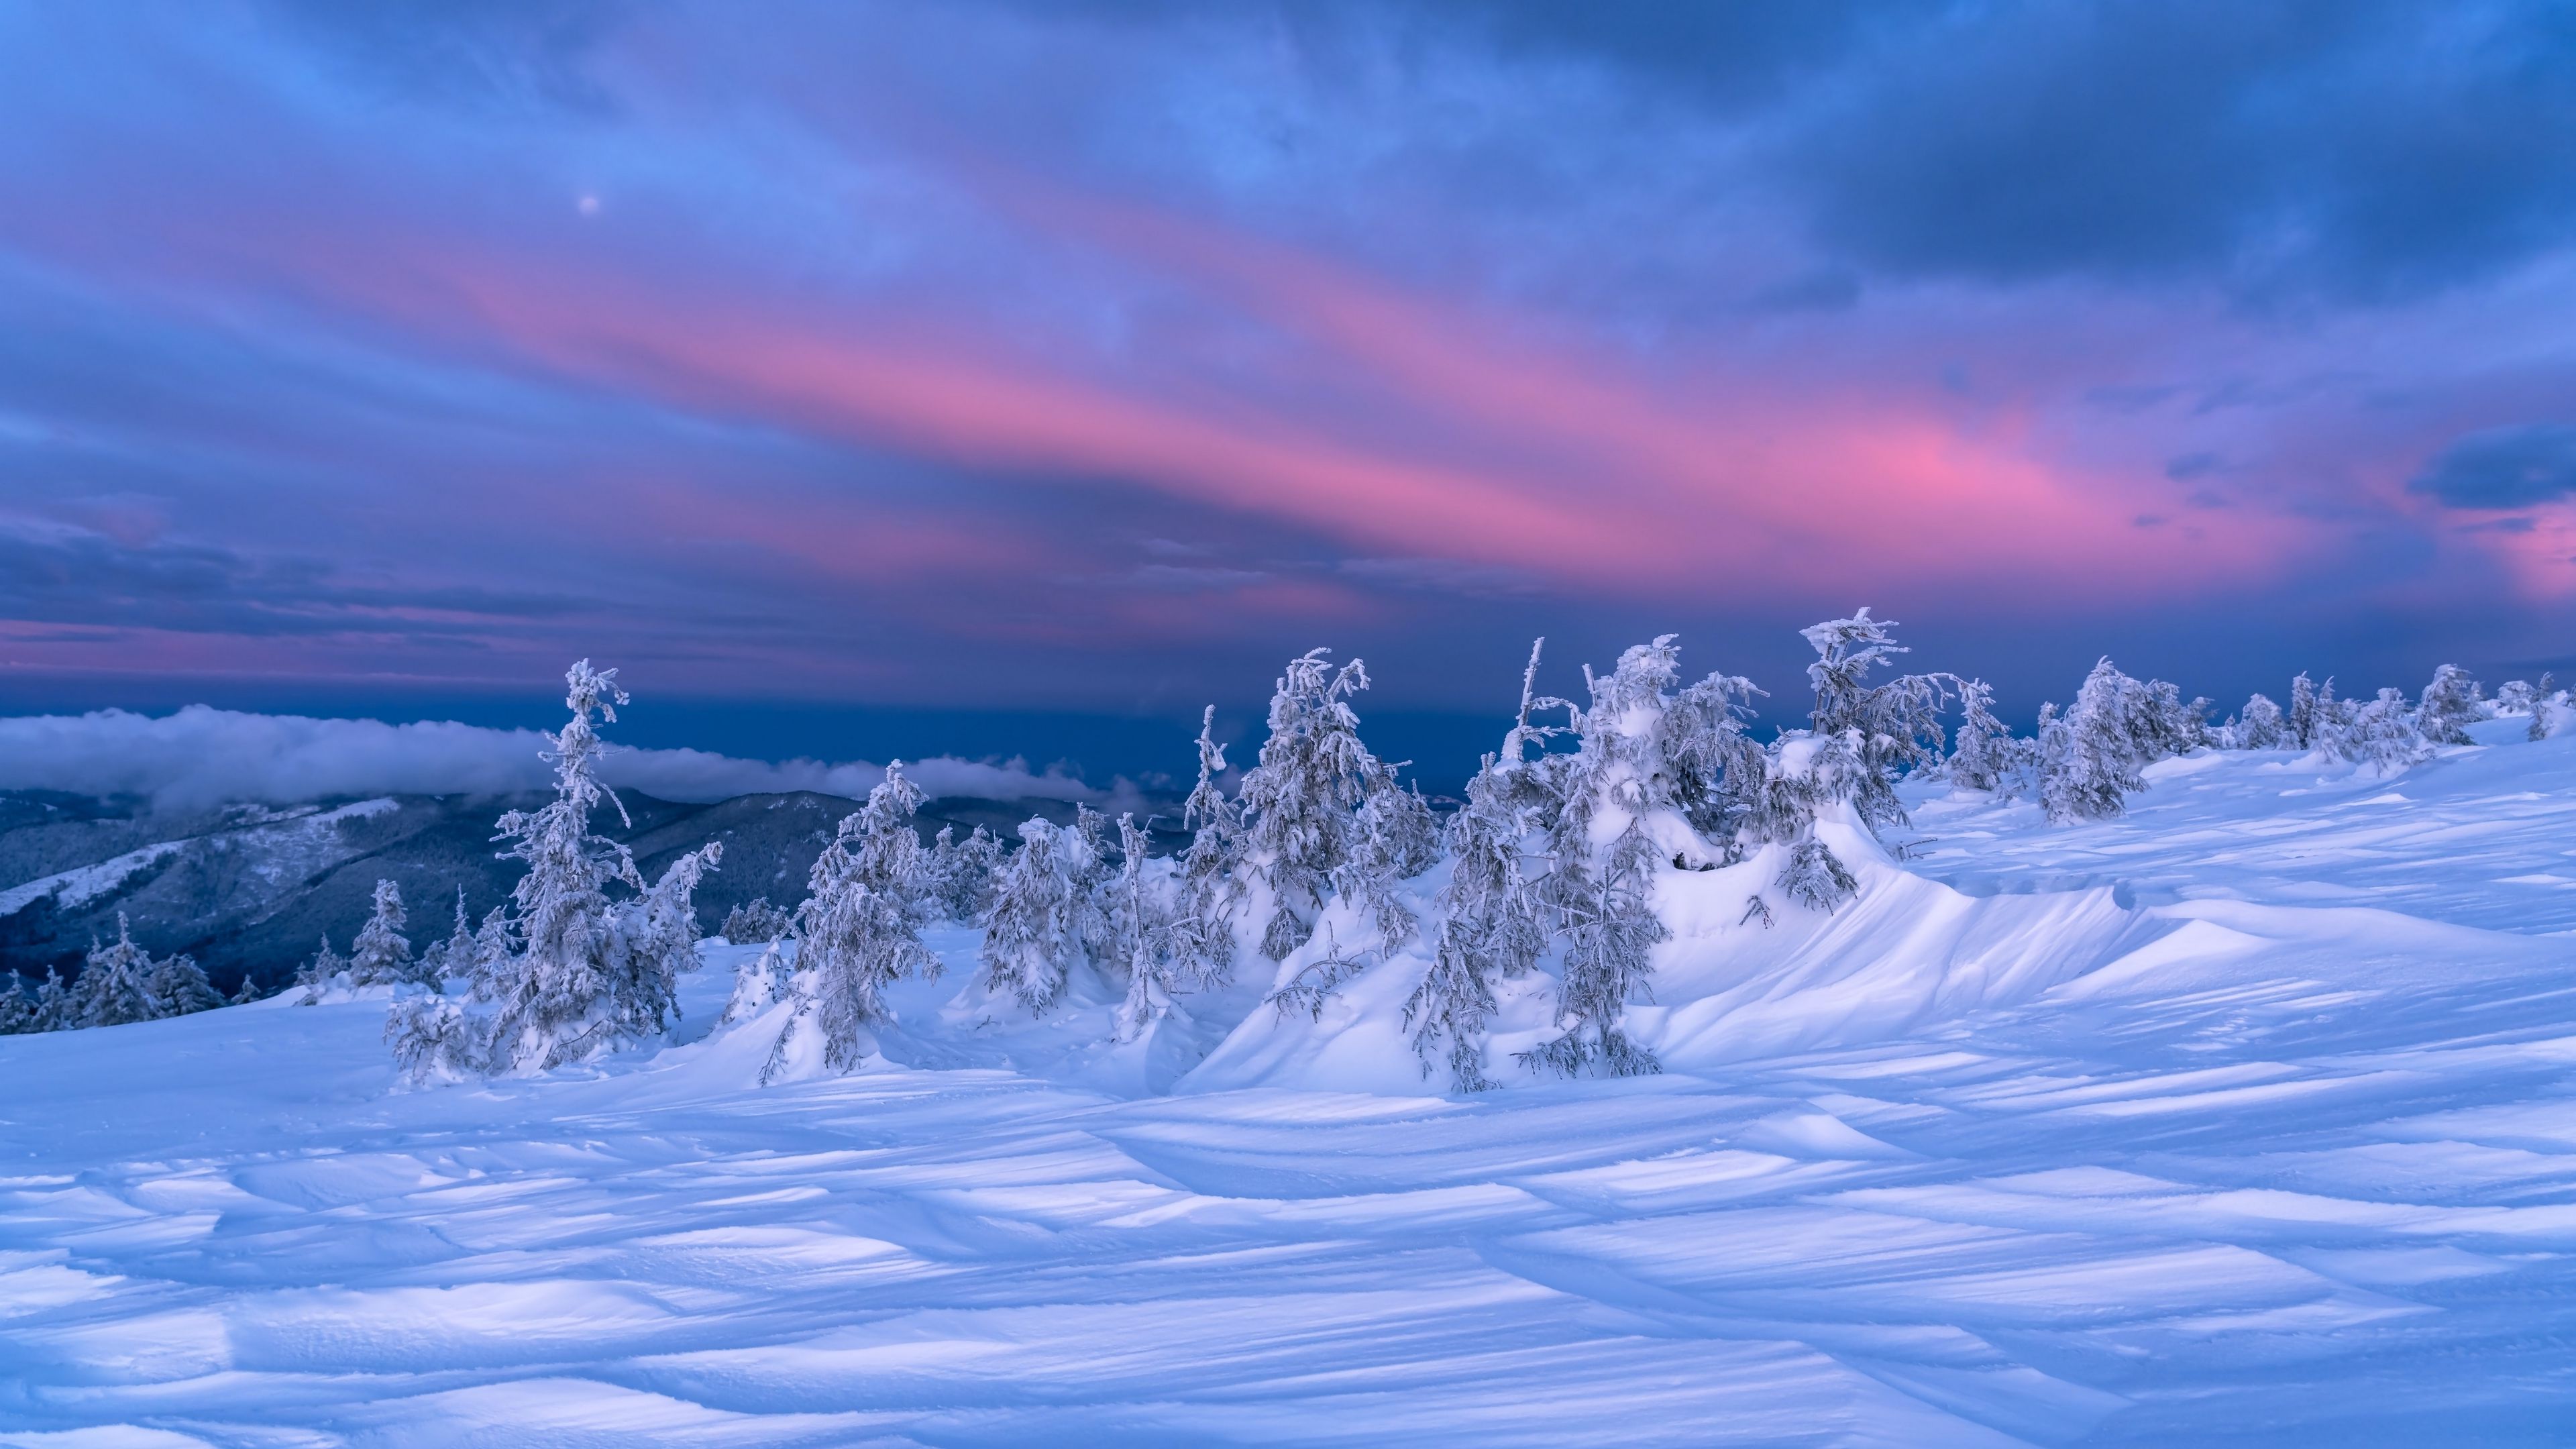 Tuyết nhấp nhô dưới ánh hoàng hôn với cây cối phủ đầy màu trắng làm nên một bức tranh phong cảnh đẹp tuyệt vời trong mùa đông. Hình ảnh này mang đến sự yên bình, tĩnh lặng nhưng cũng rất tràn đầy sức sống và sự khởi đầu mới.